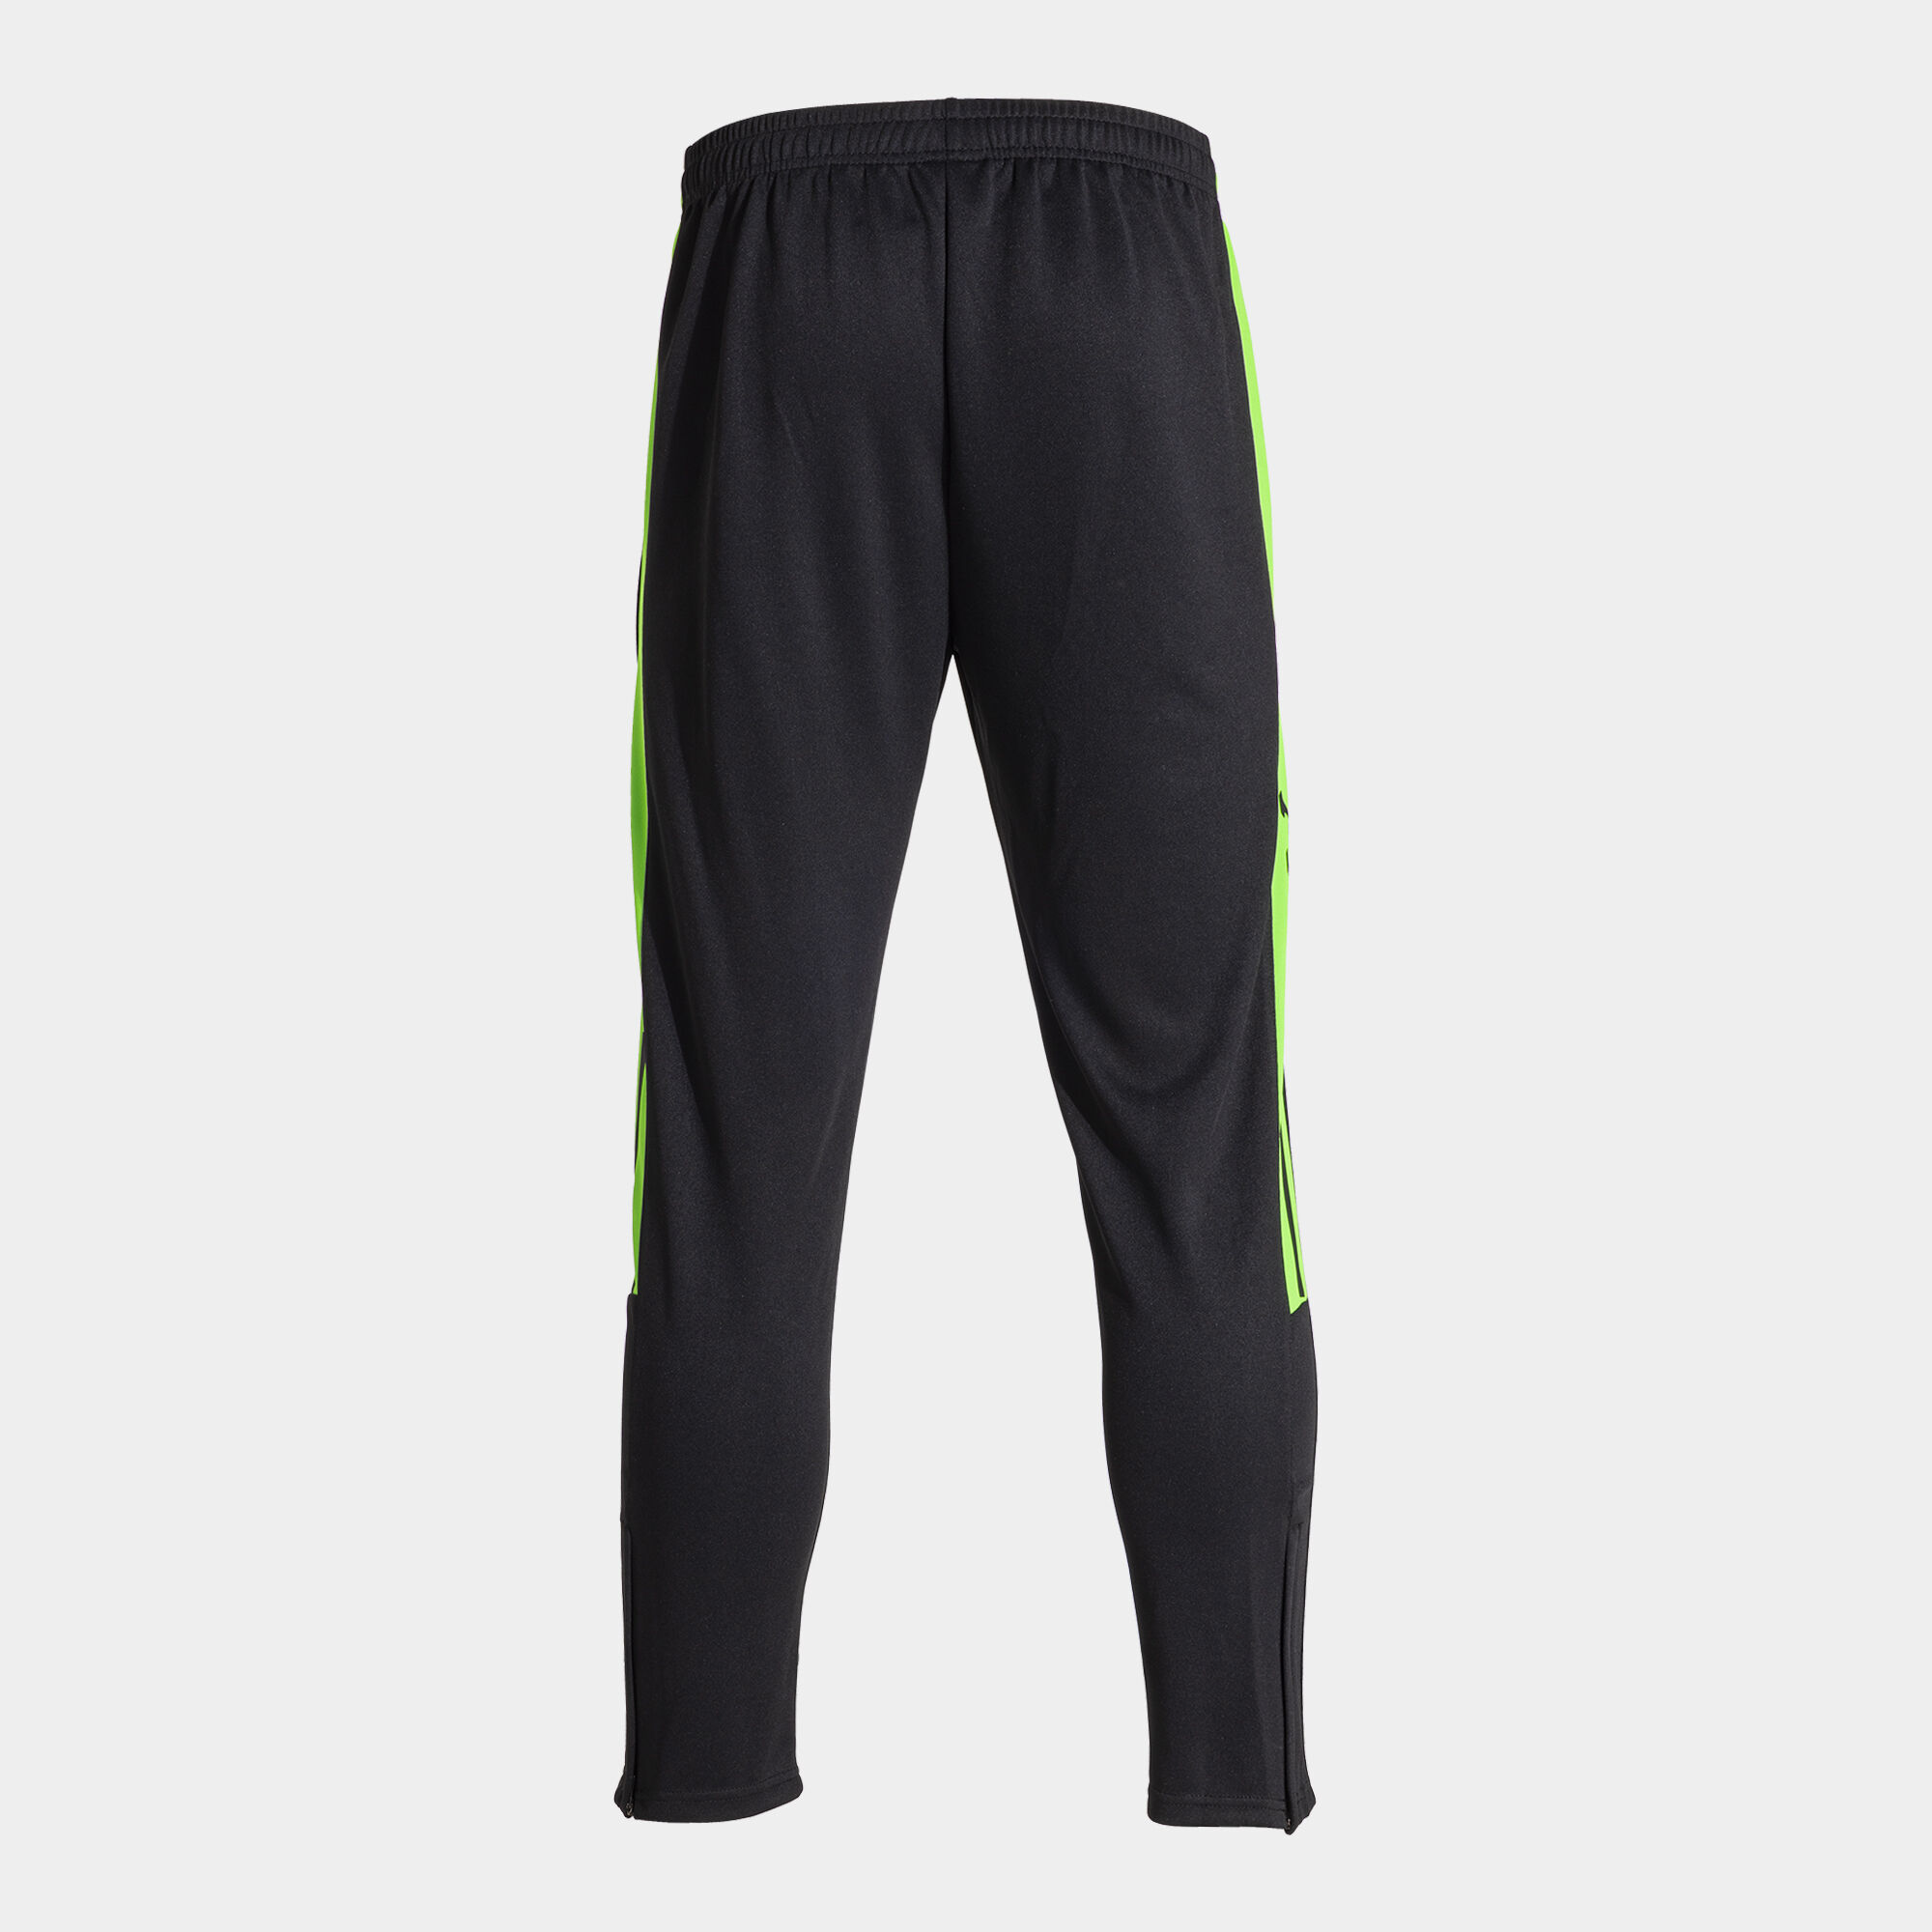 Długie spodnie mężczyźni Olimpiada czarny fluorescencyjny zielony